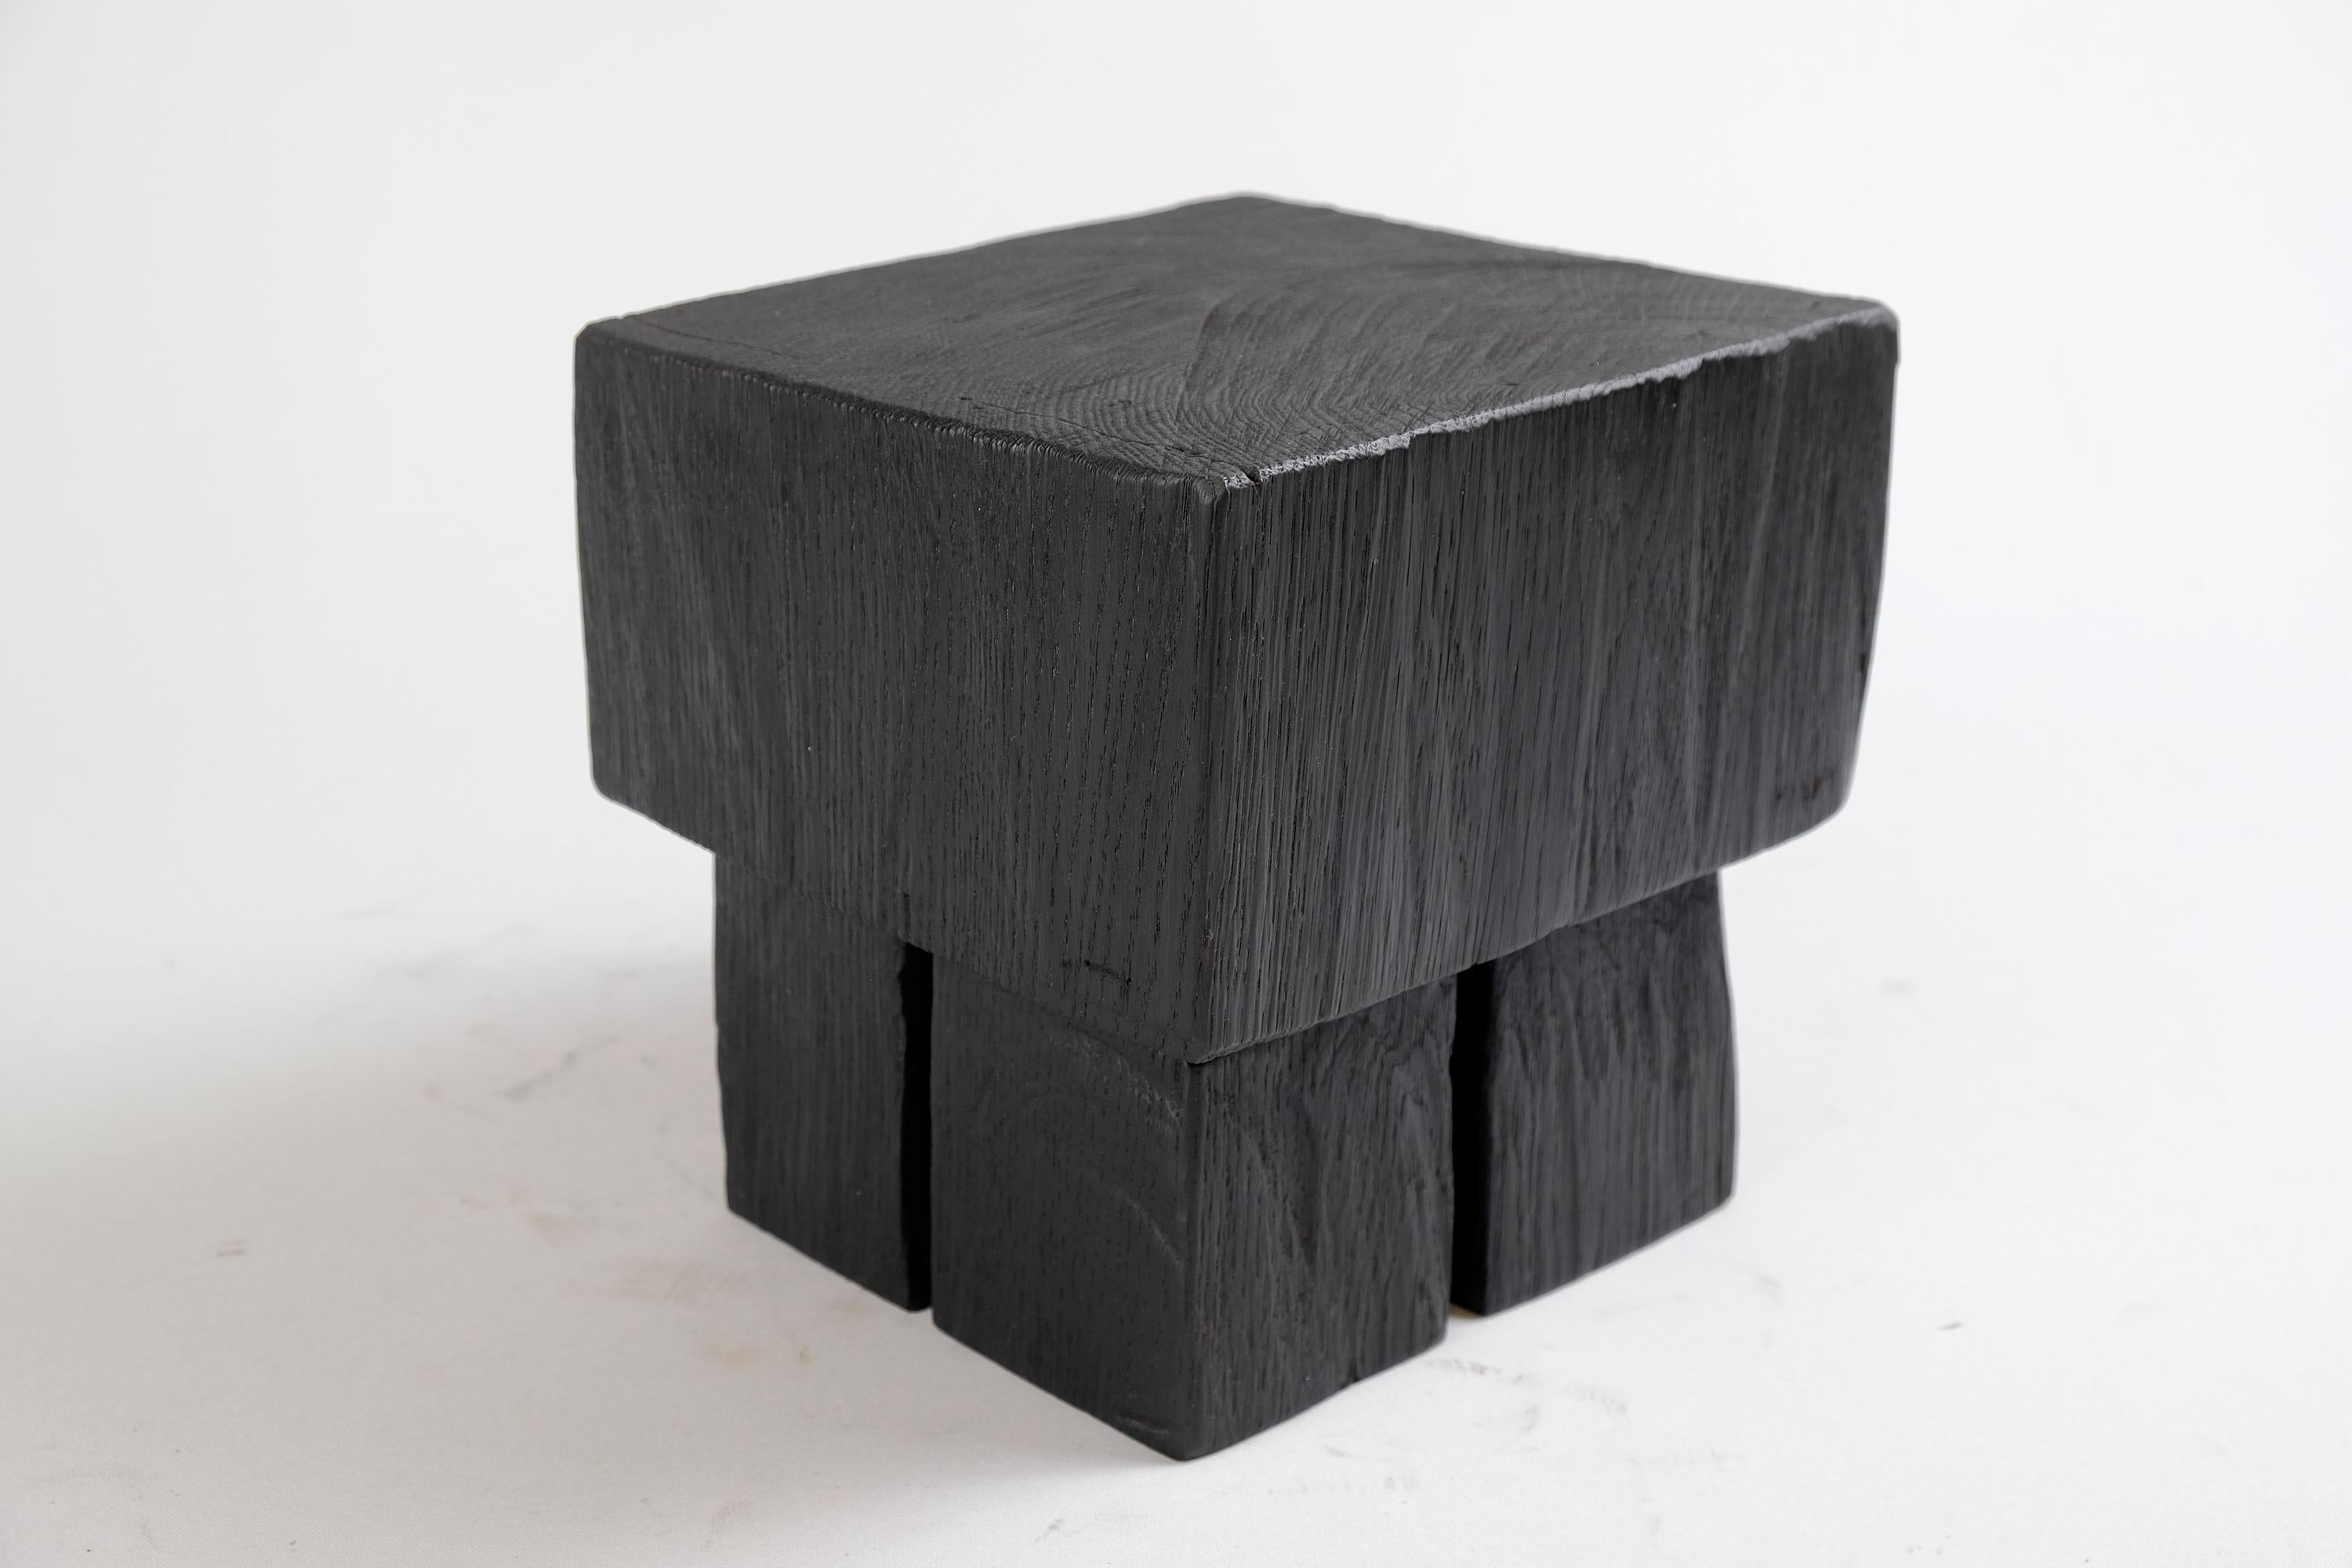 Tabouret/table d'appoint unique en bois sculpté à la tronçonneuse. Sculpté dans une seule pièce de bois et protégé par des huiles de la plus haute qualité, il est durable pour des générations. Un tel design unique fait à la main mettra en valeur